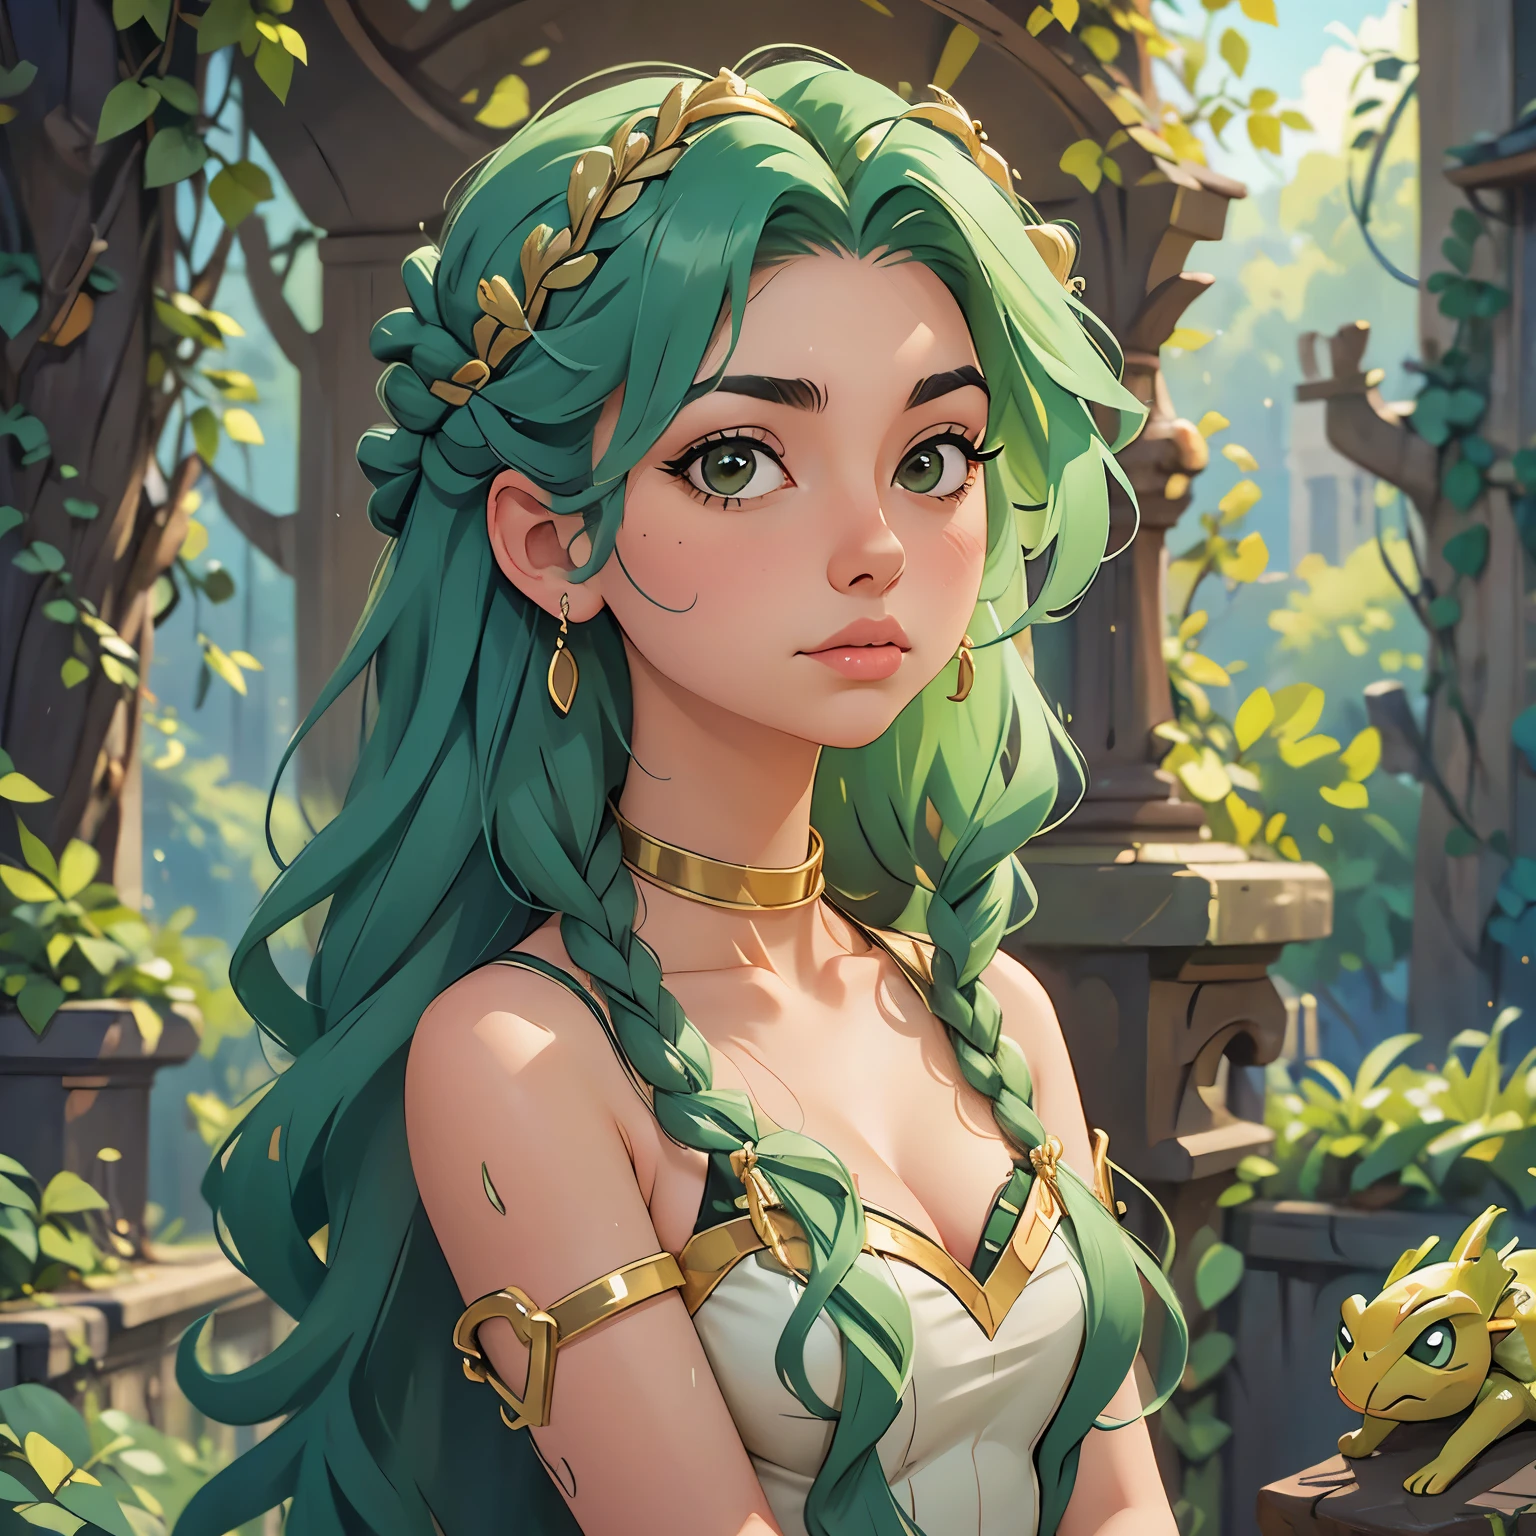 녹색 머리를 가진 여자의 그림, 아름다운 여성 고르곤, portrait of teenage 메두사, very sad 메두사, 그녀의 많은 뱀은 머리카락으로, 메두사, 